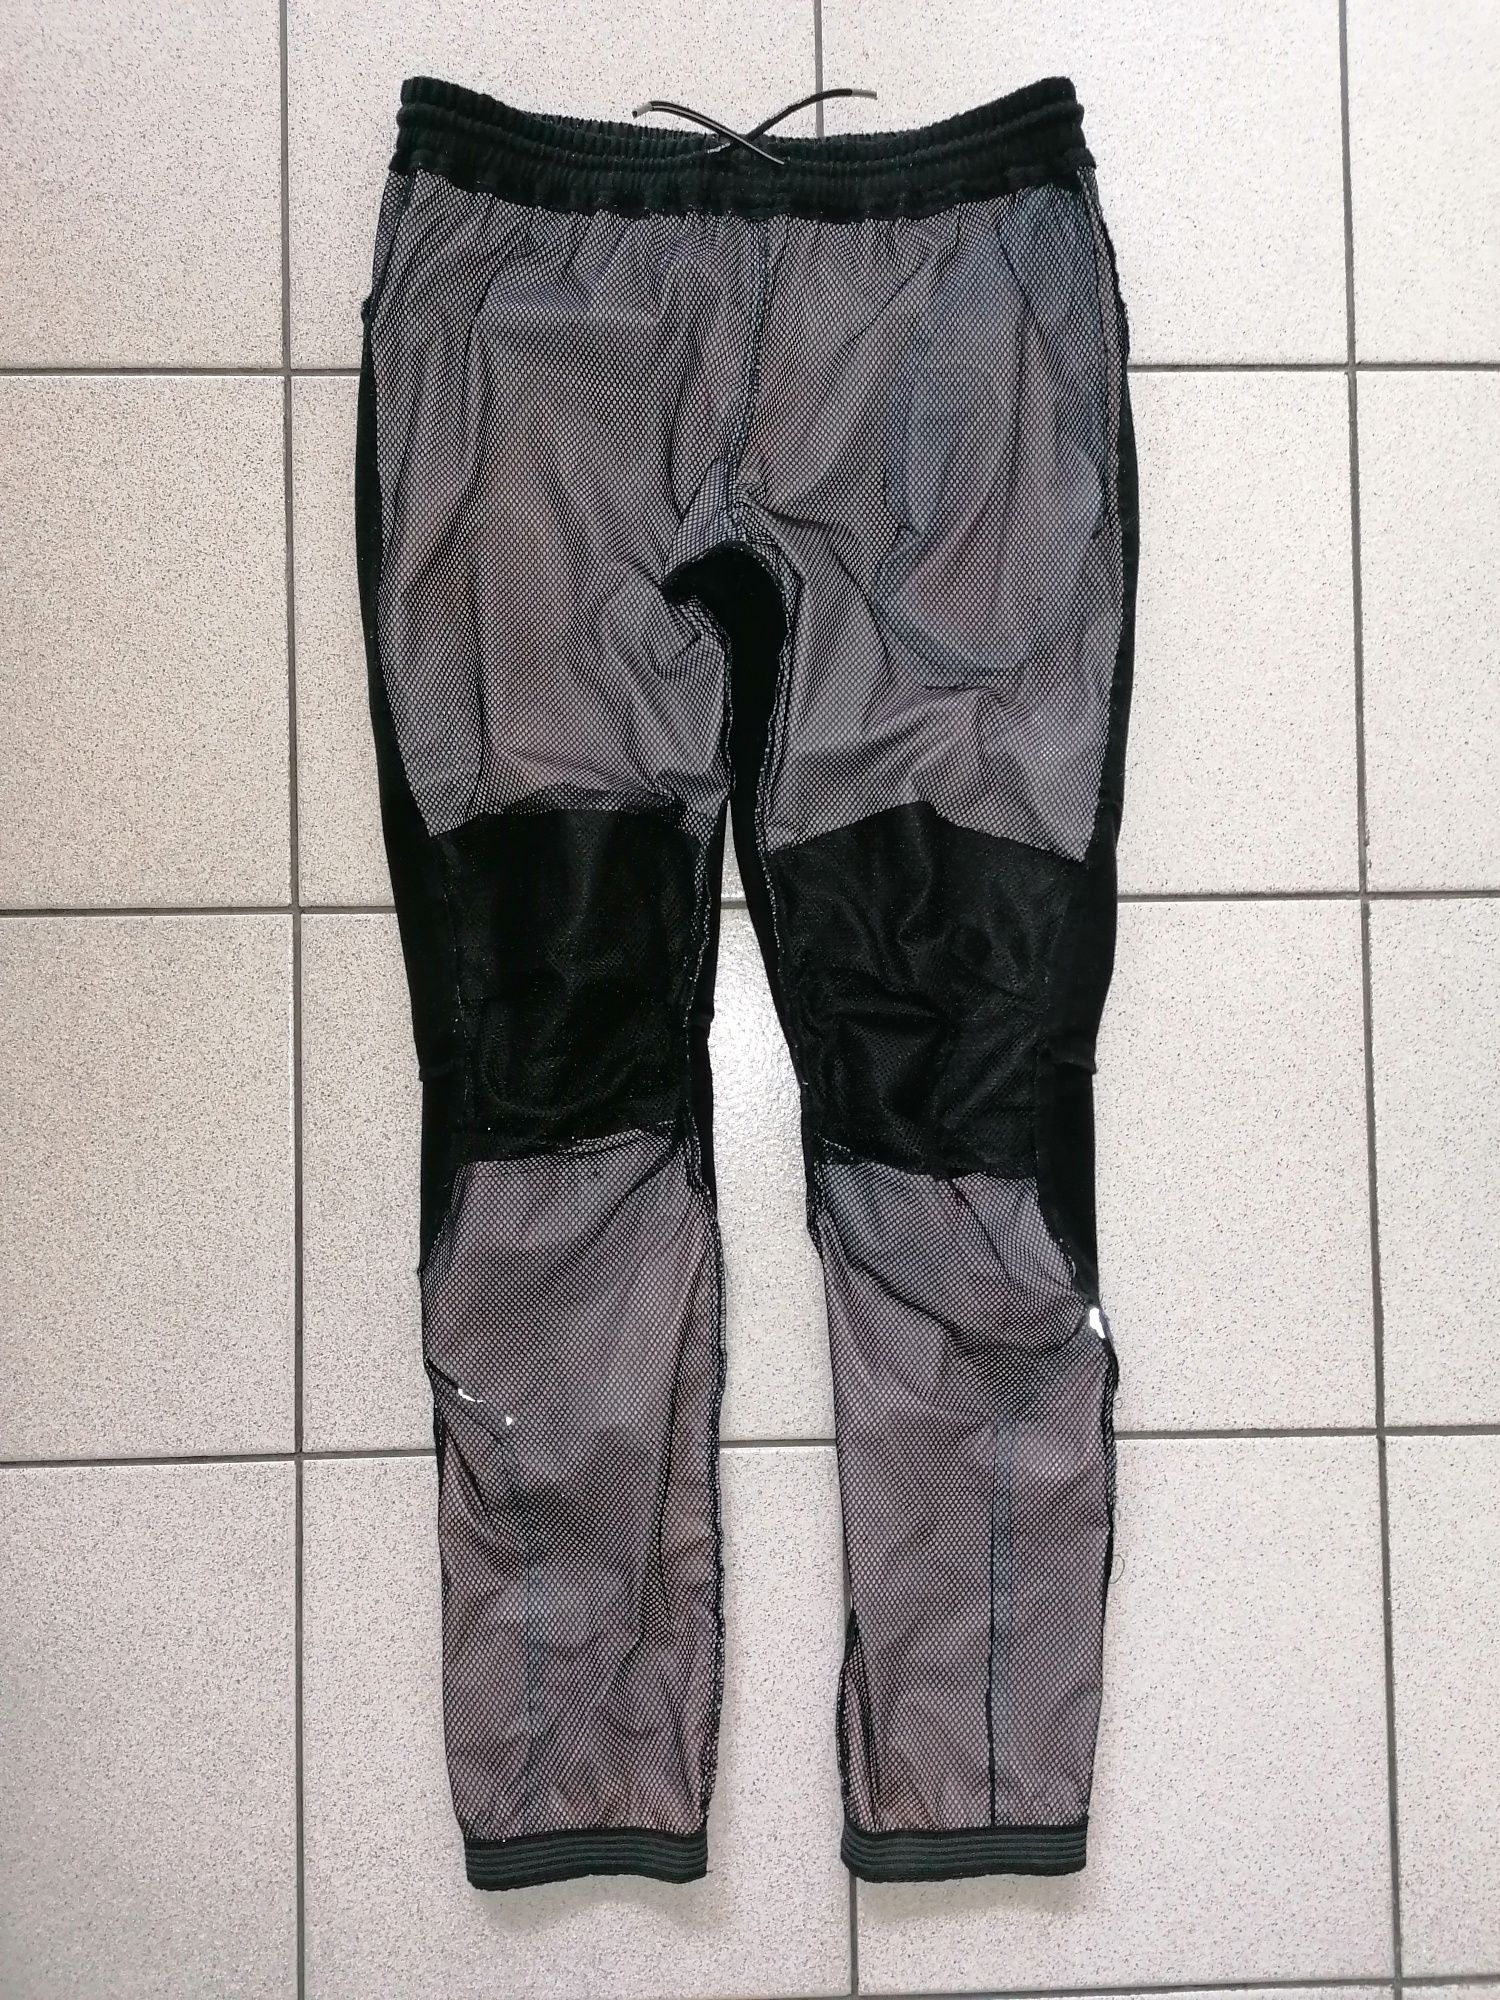 STORMBERG® - дамски спортен панталон - 29(М)